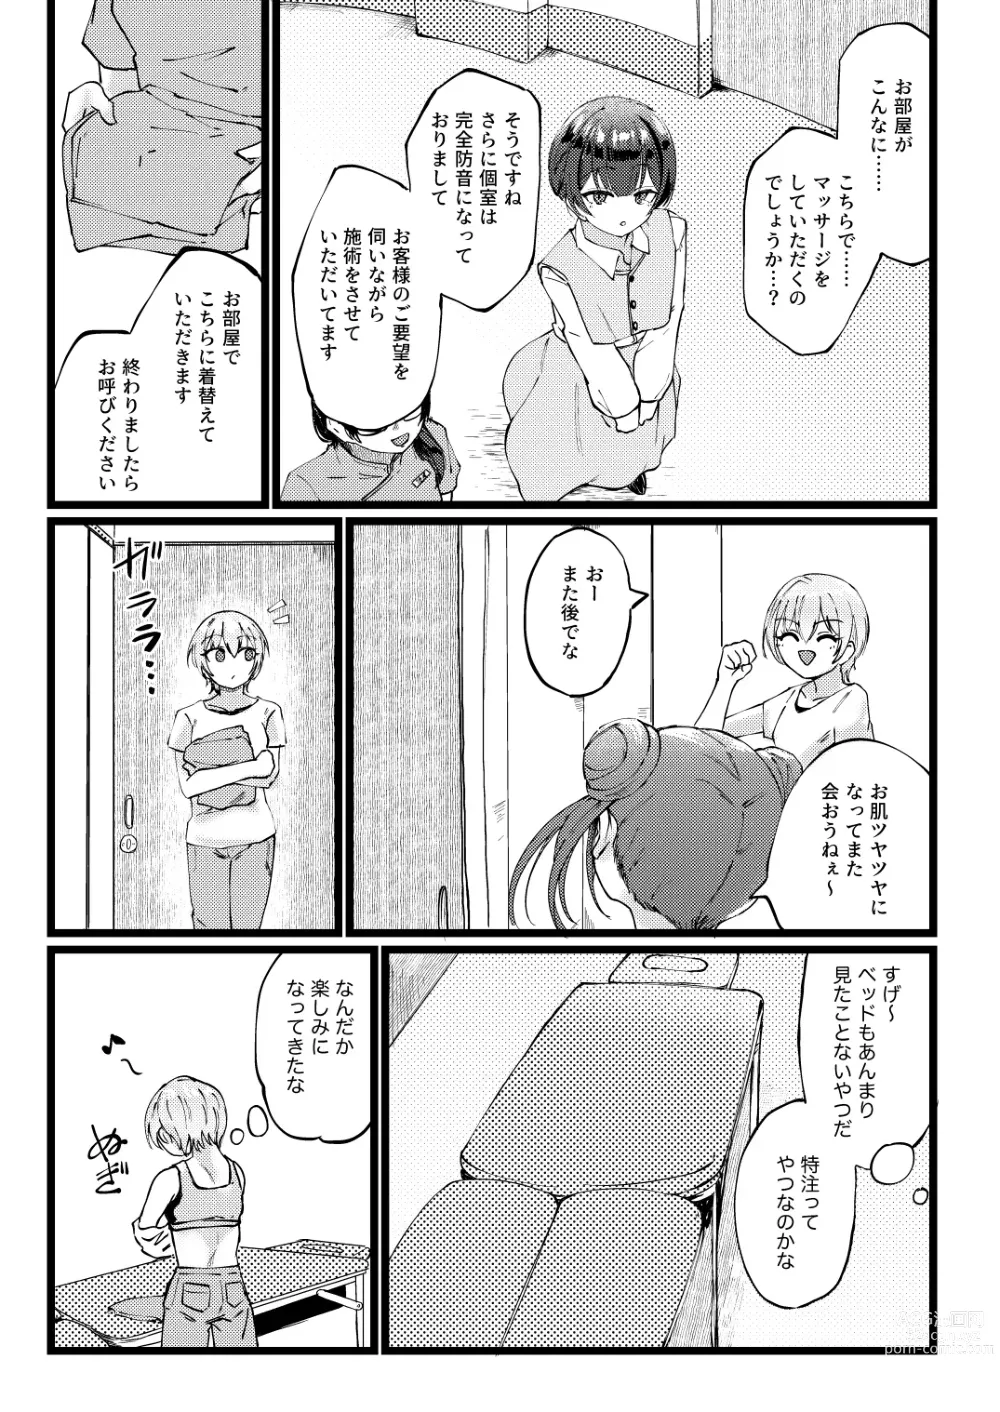 Page 6 of doujinshi Sugee Zecchou Shichimatta naa!